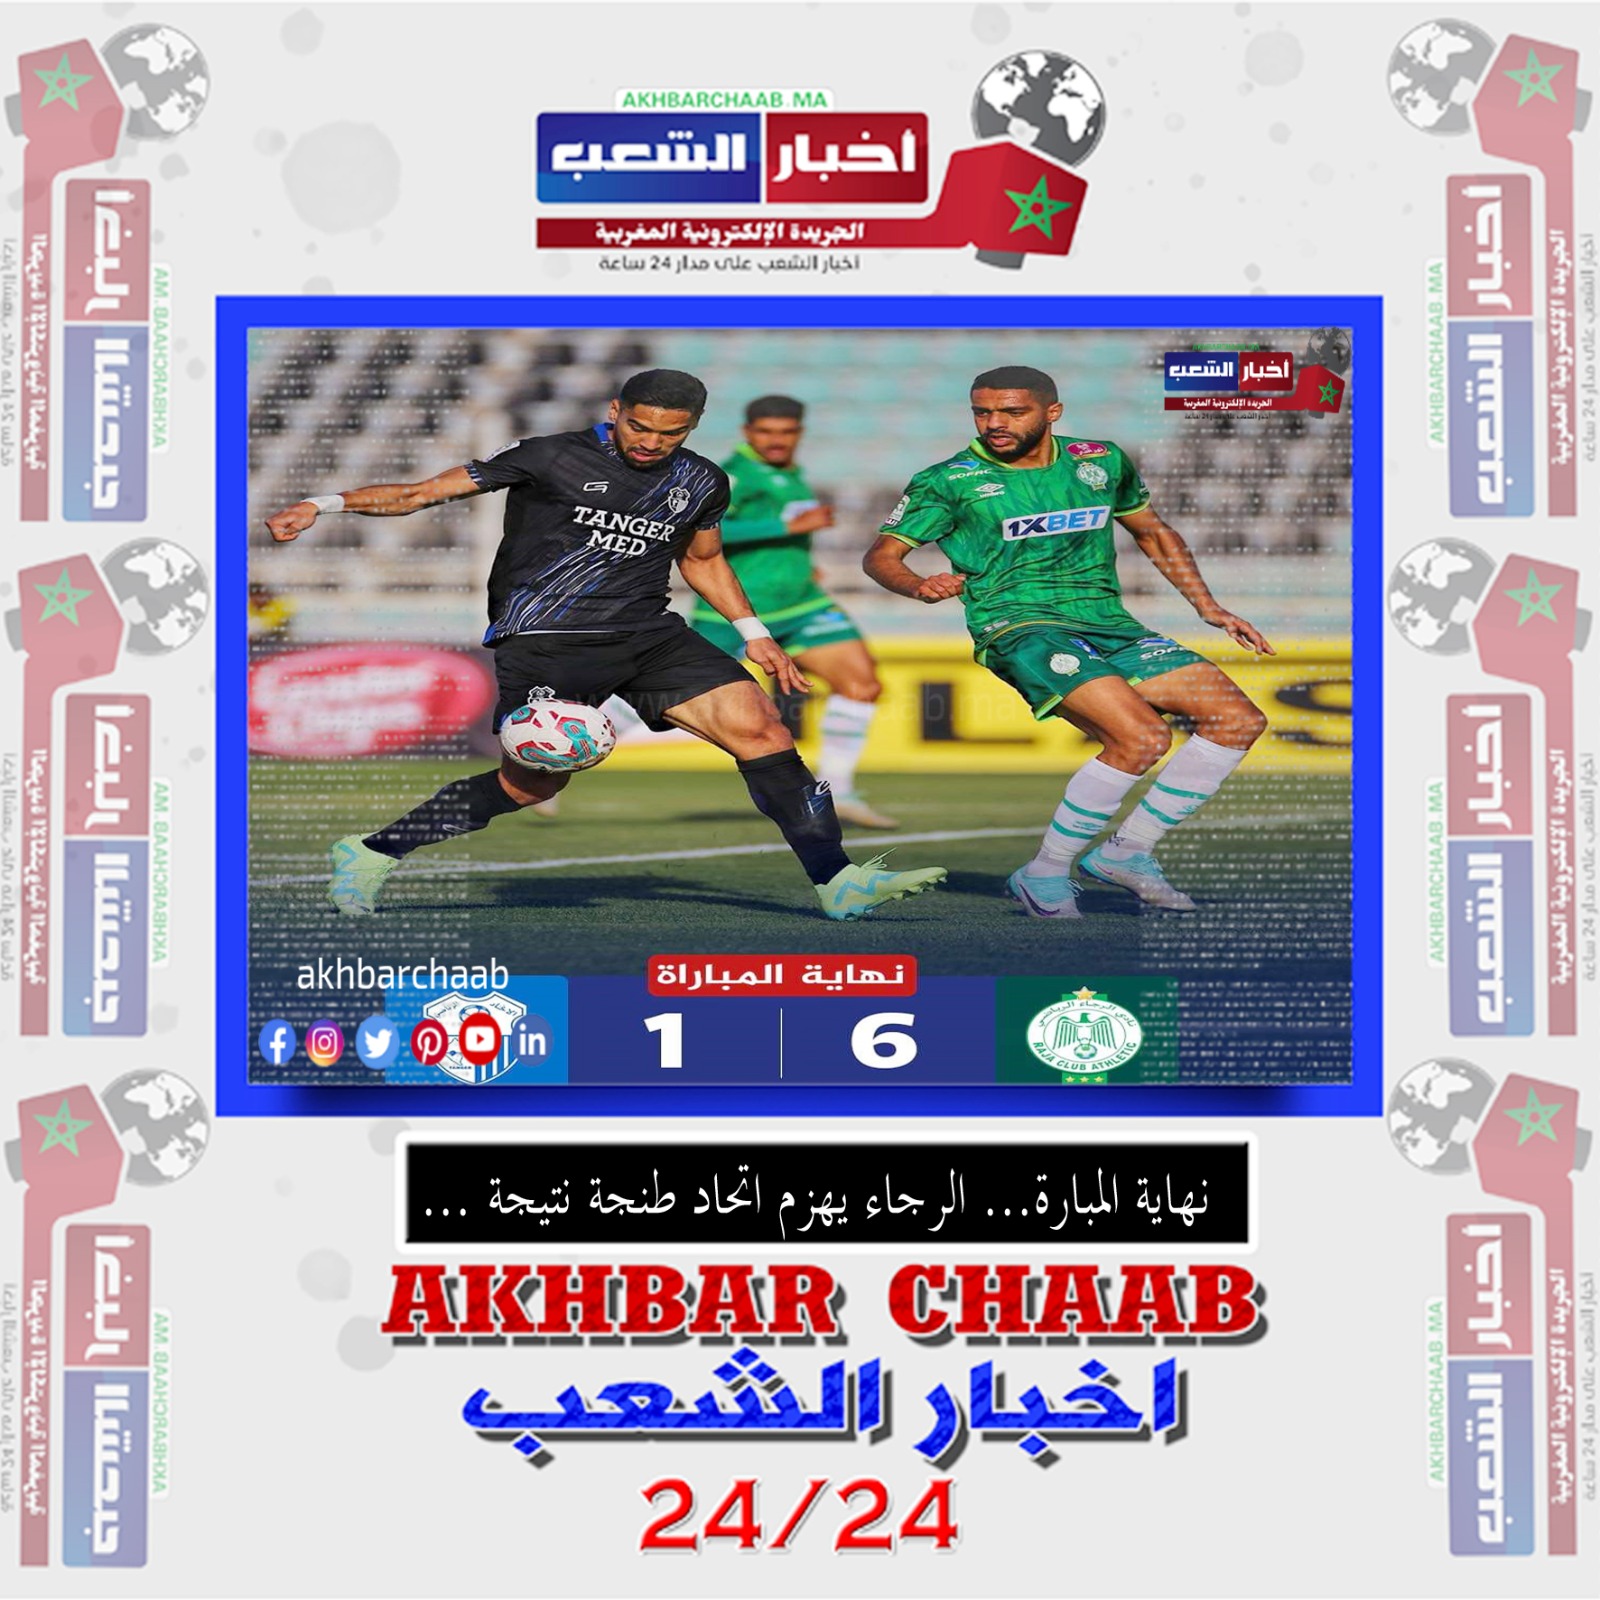 الرجاء يسحق اتحاد طنجة بنتيجة 6-1 ويعتلي صدارة الترتيب الدوري المغربي الممتاز مؤقتا